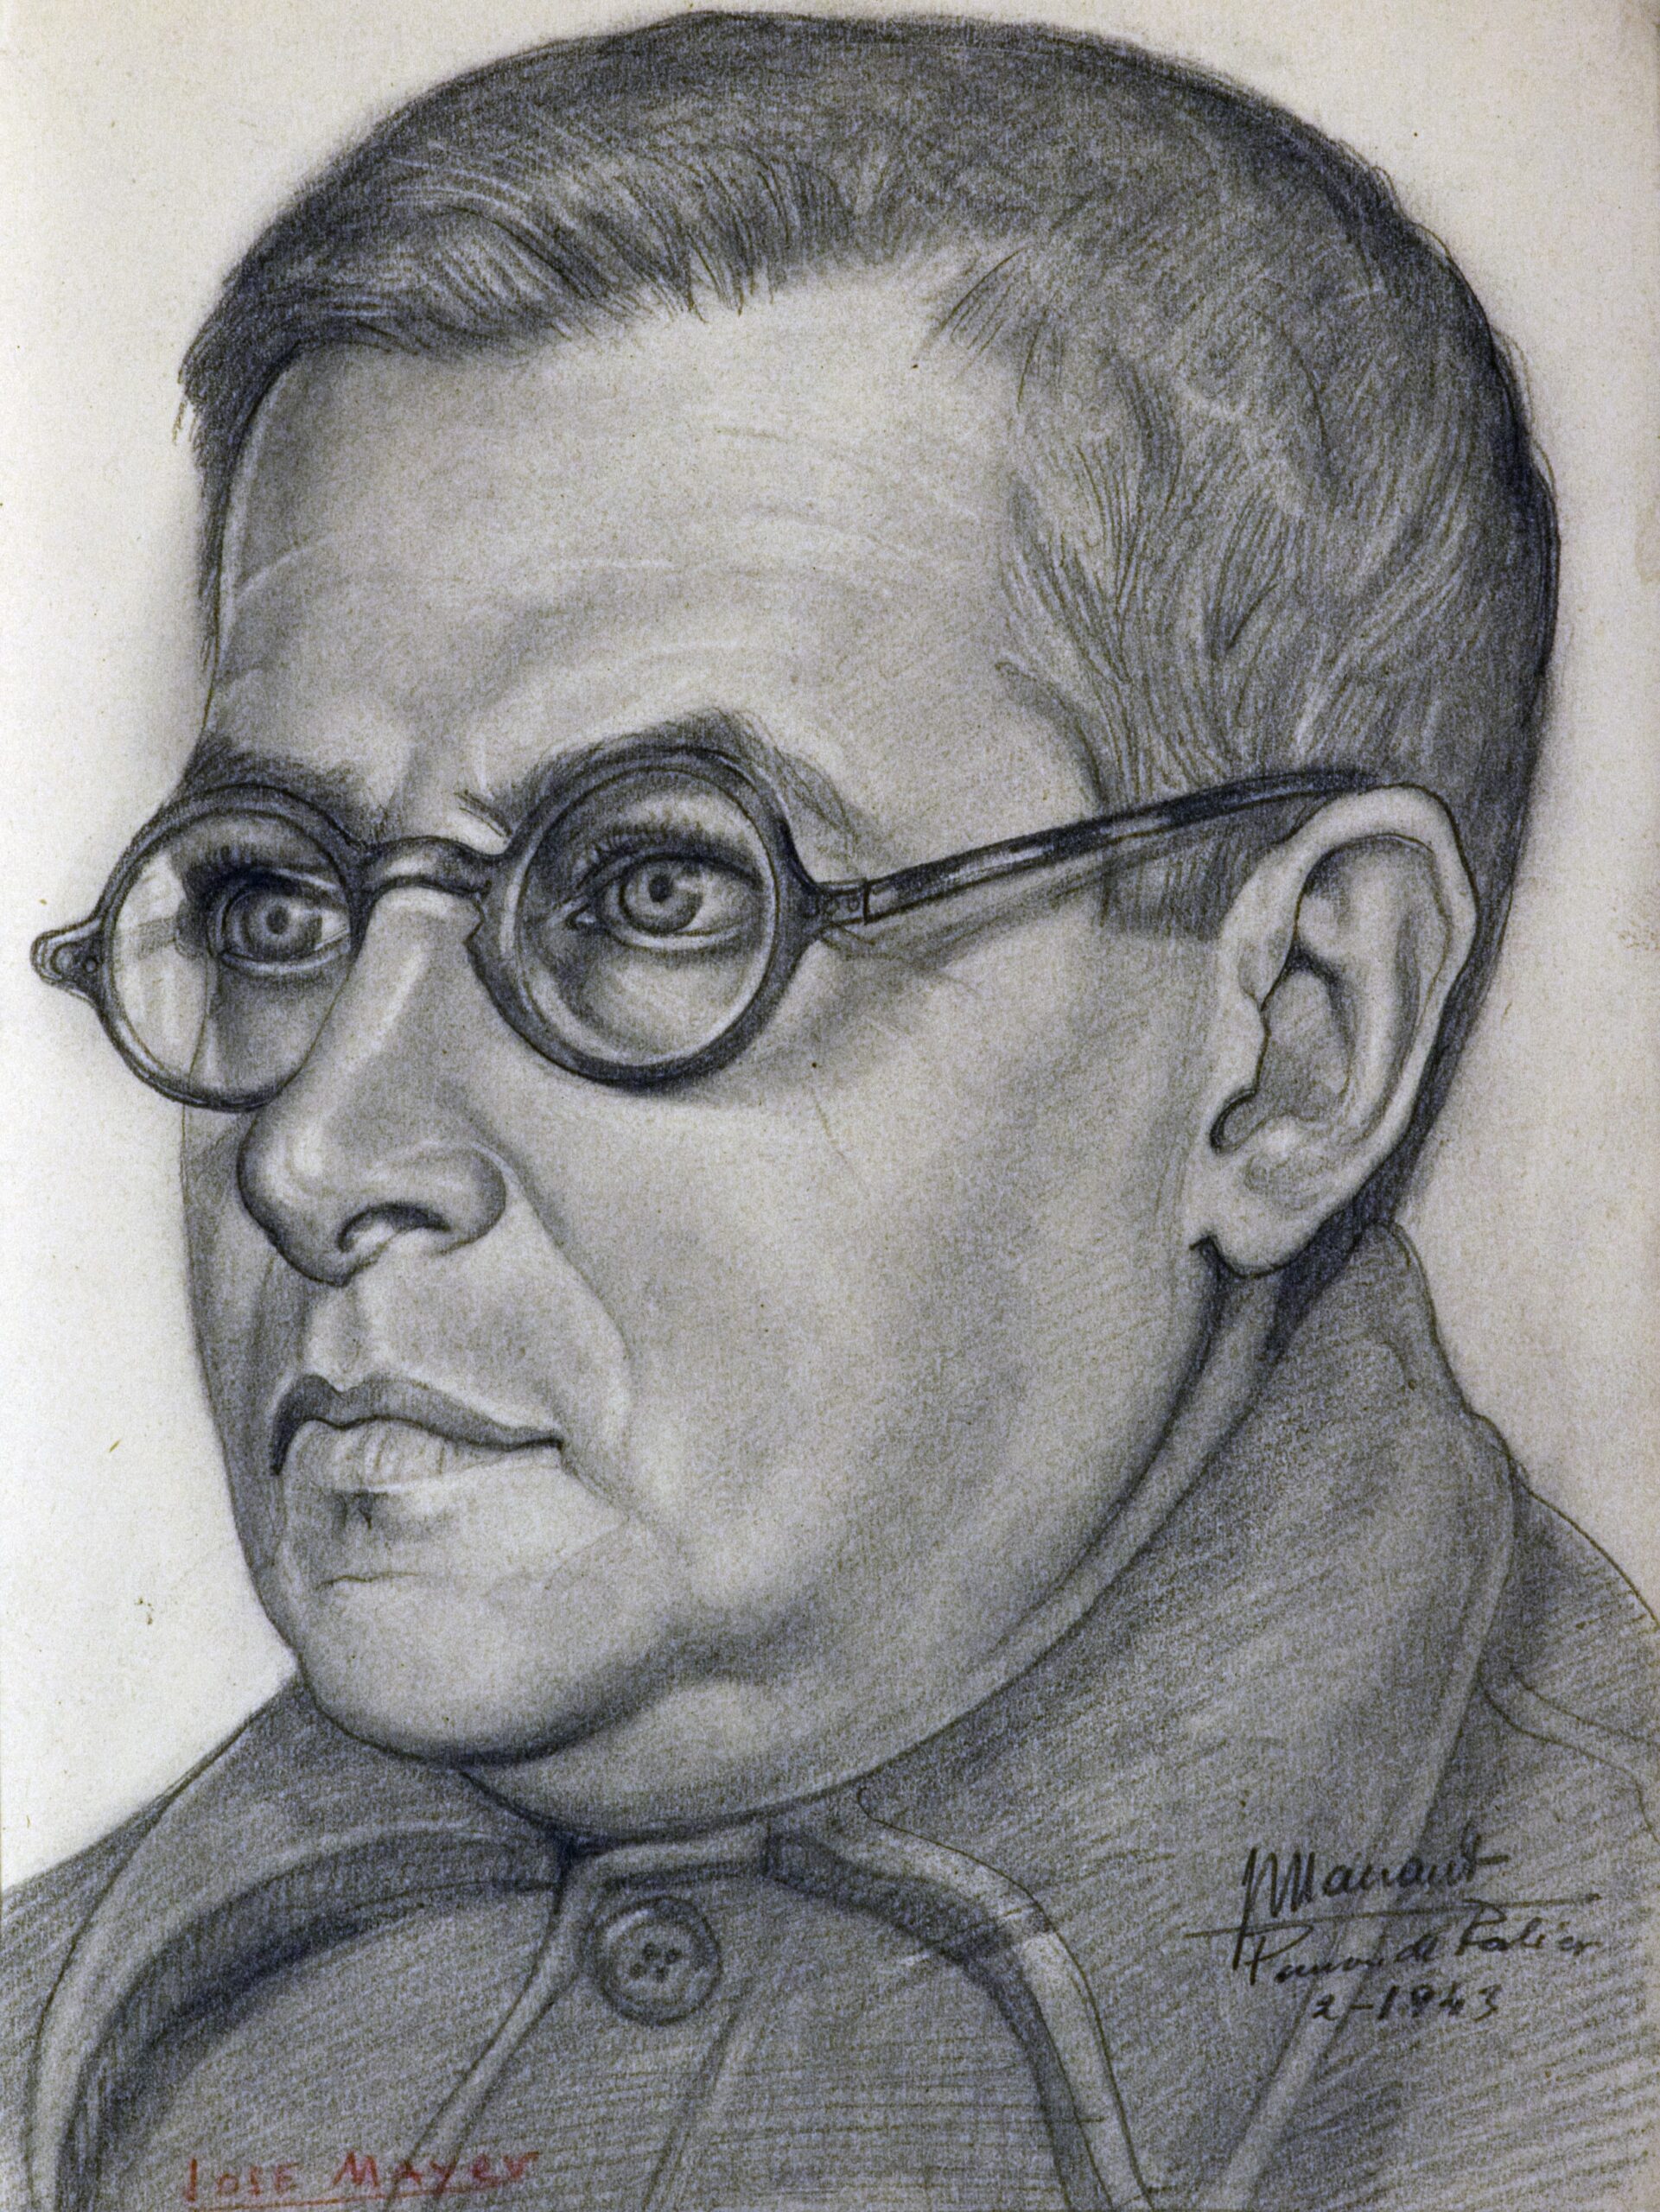 Dibujo de José Manaut titulado José Mayer, retrato, con gafas, Porlier, 1943. Carboncillo sobre papel.